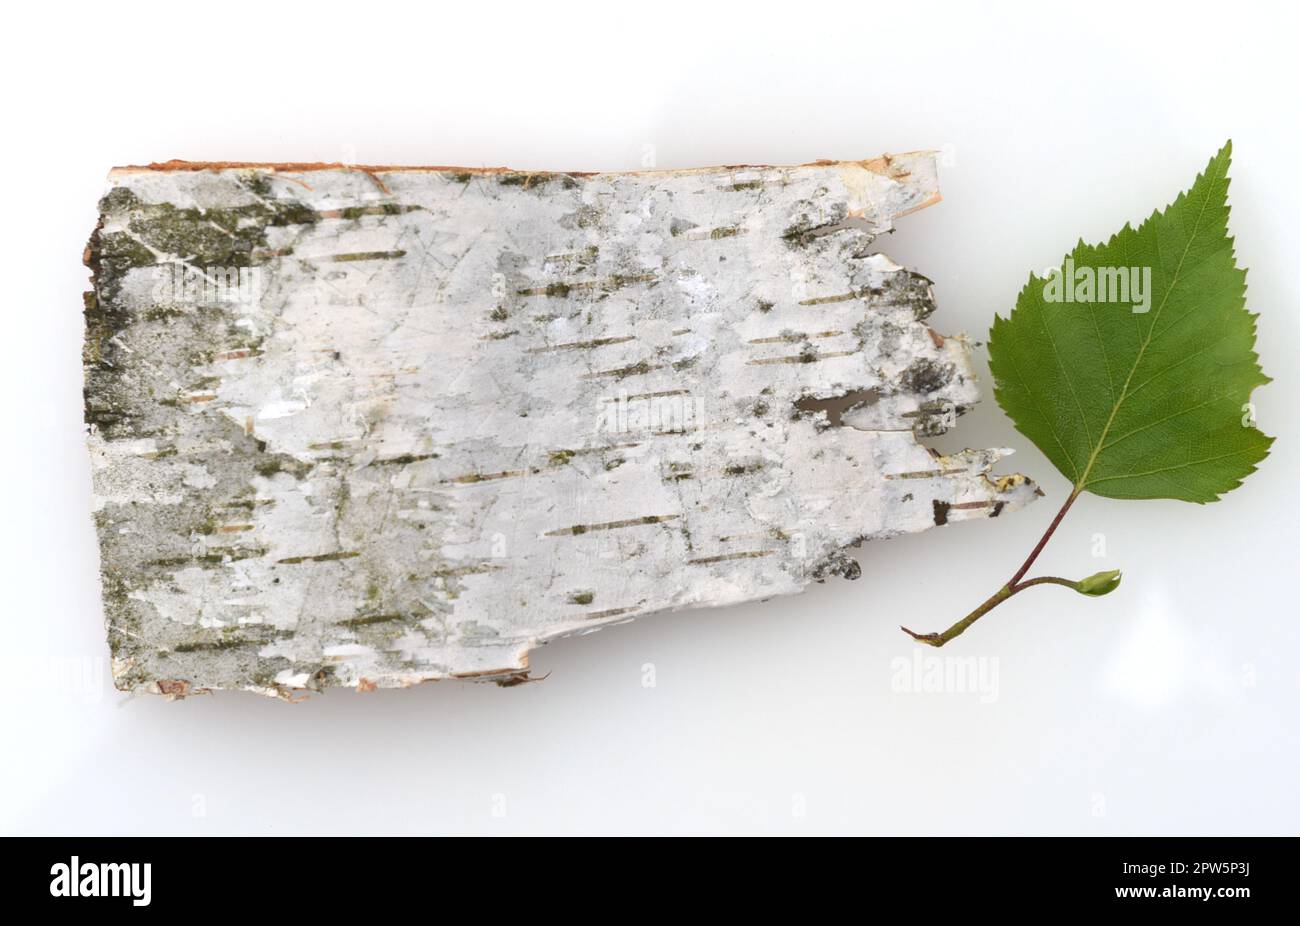 Birkenbaum, Birke Betula, ist ein heimischer, Baum der auch als Heilpflanze medizinisch verwendet wird. Le bouleau betula est un arbre indigène Banque D'Images